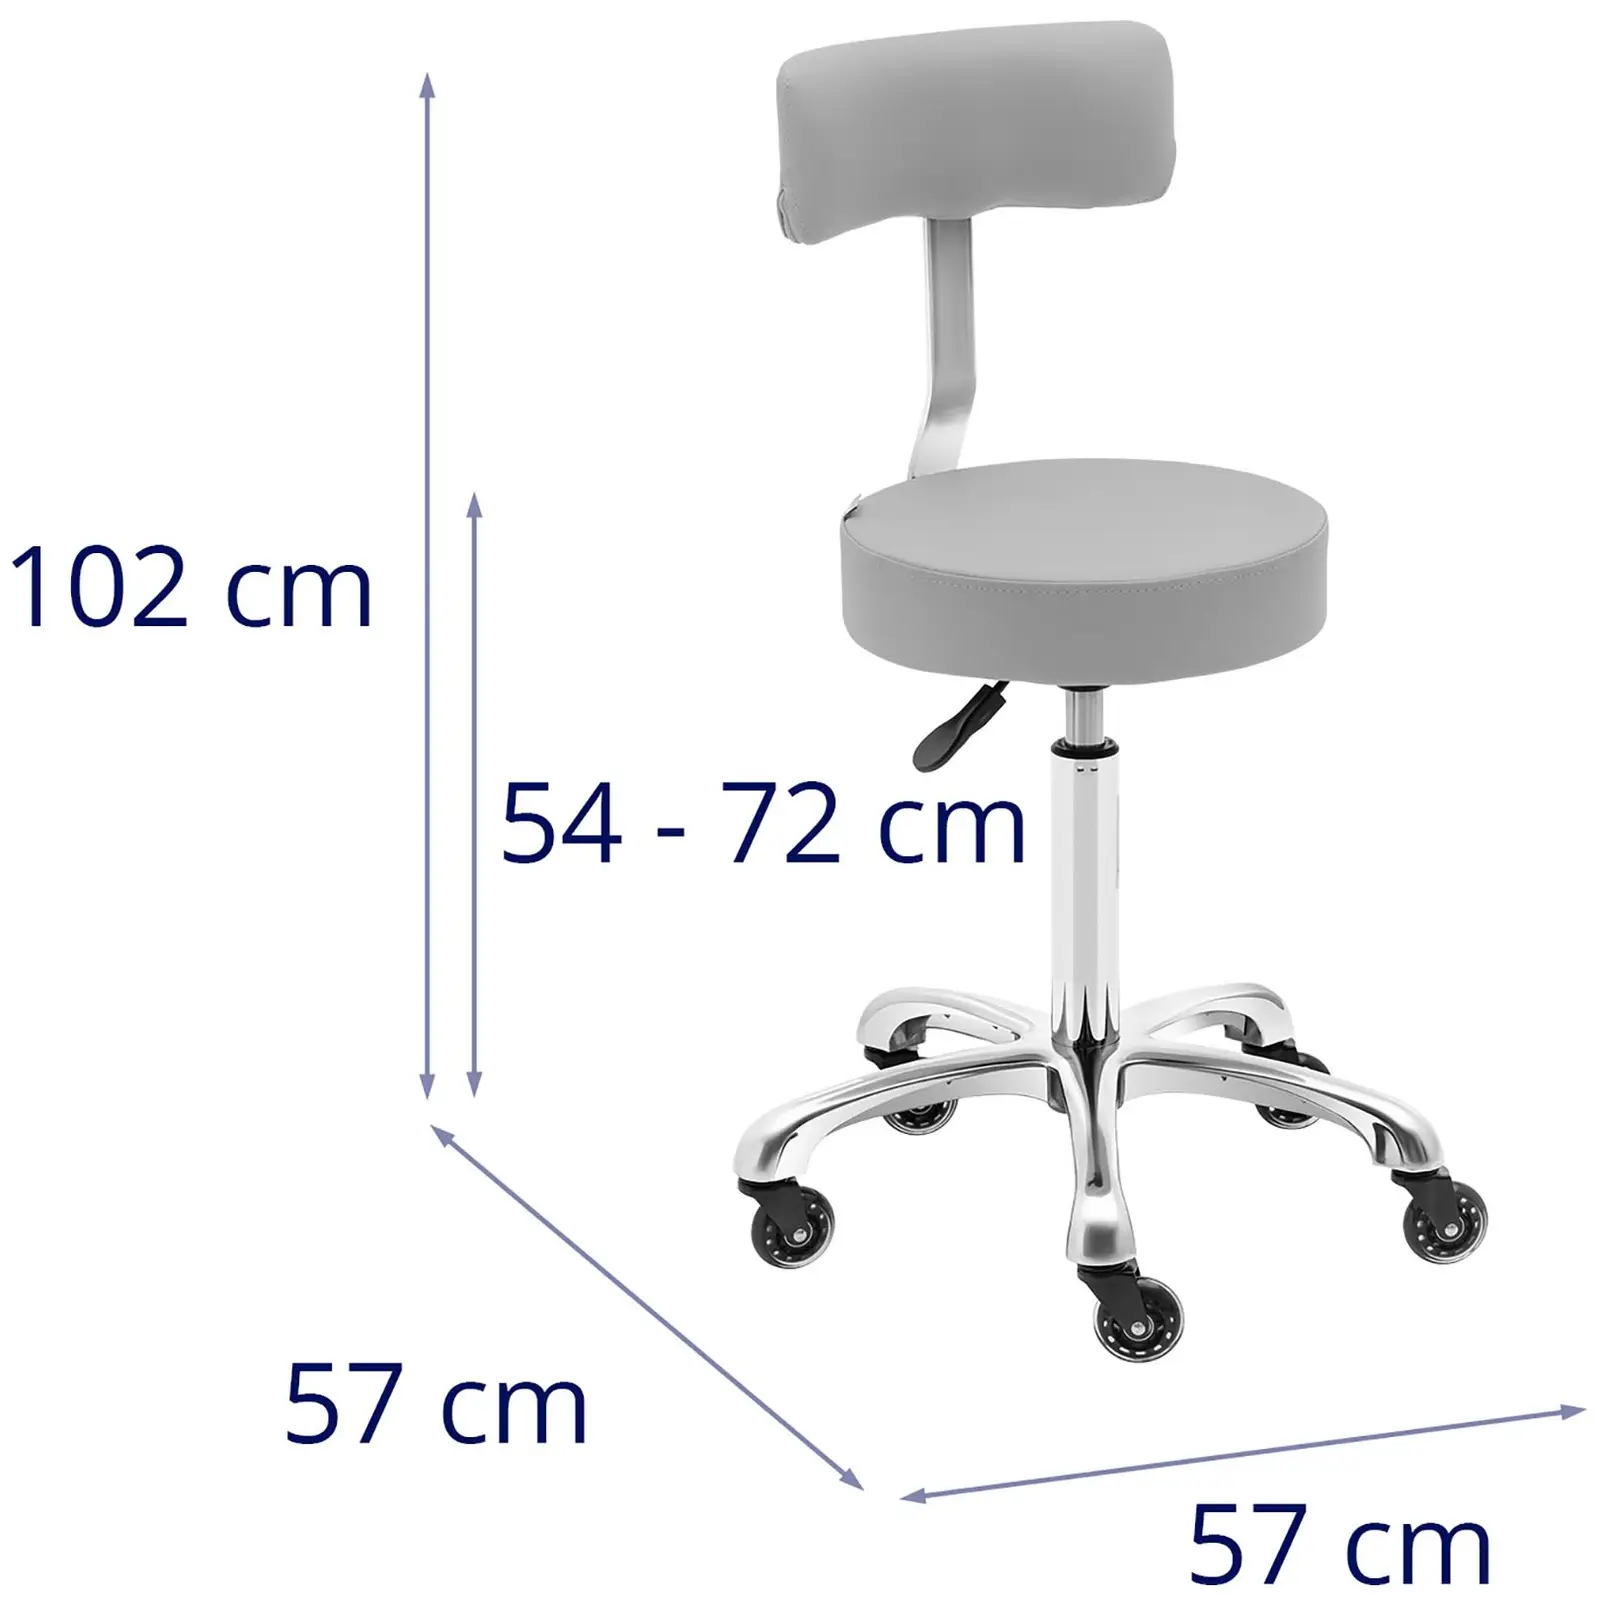 Arbejdsstol med hjul - 540 - 720 mm - lysegrå